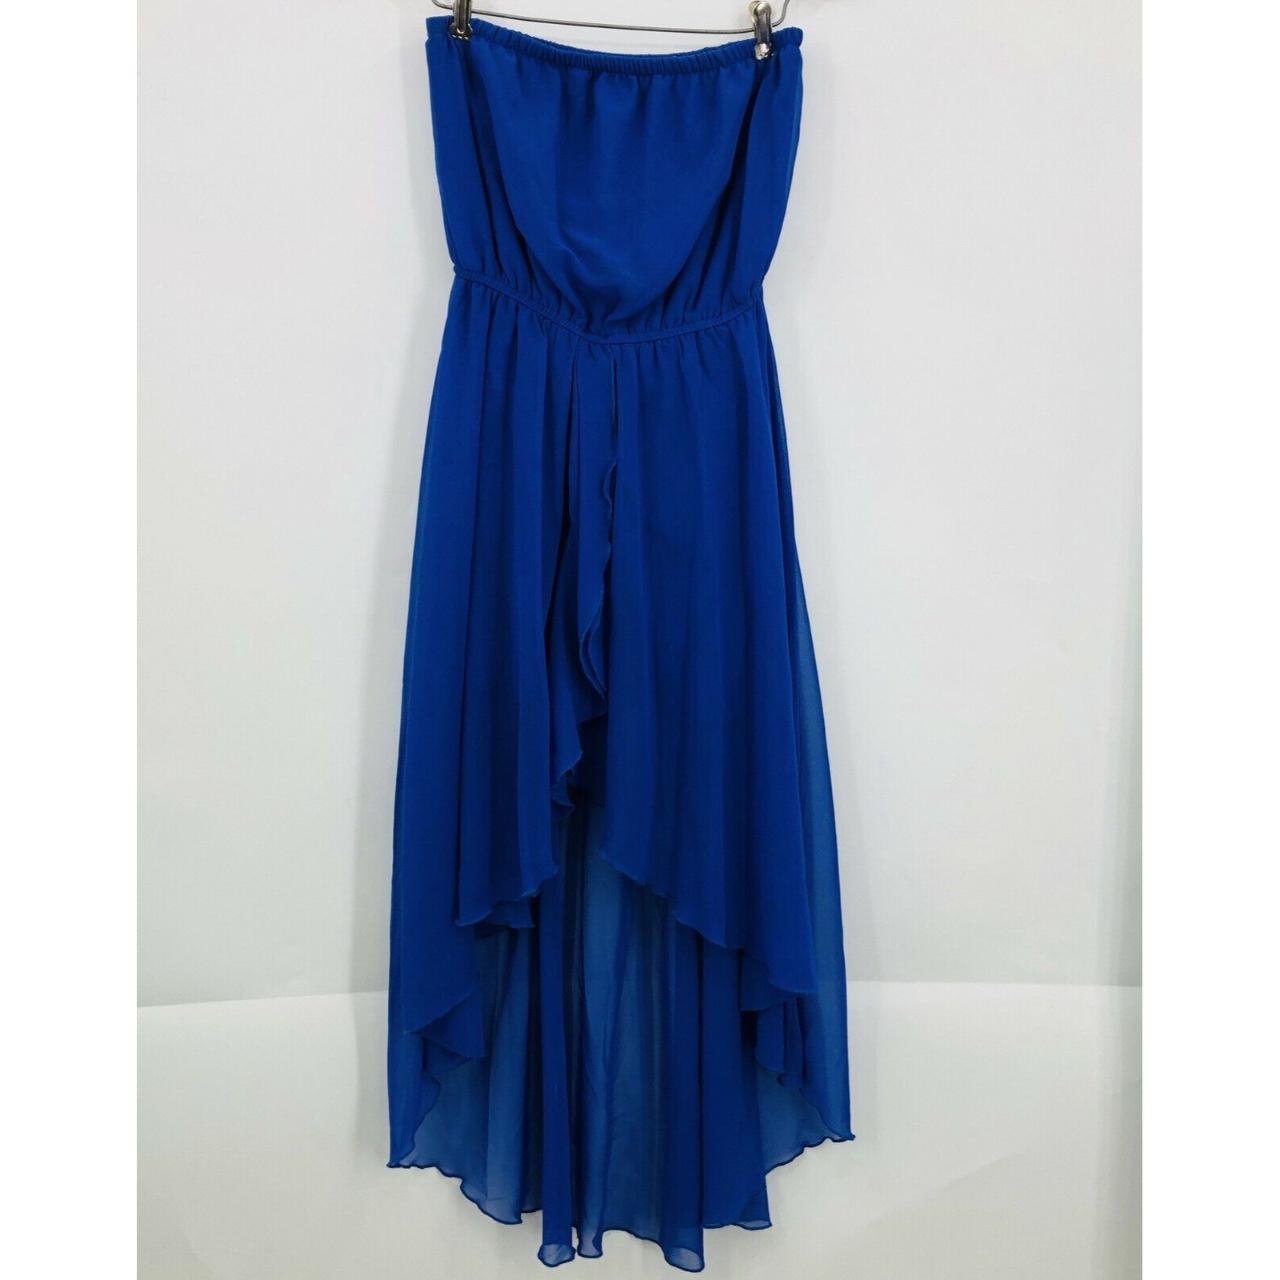 Product Image 1 - PARADISE Strapless Blue Dress 

Hi